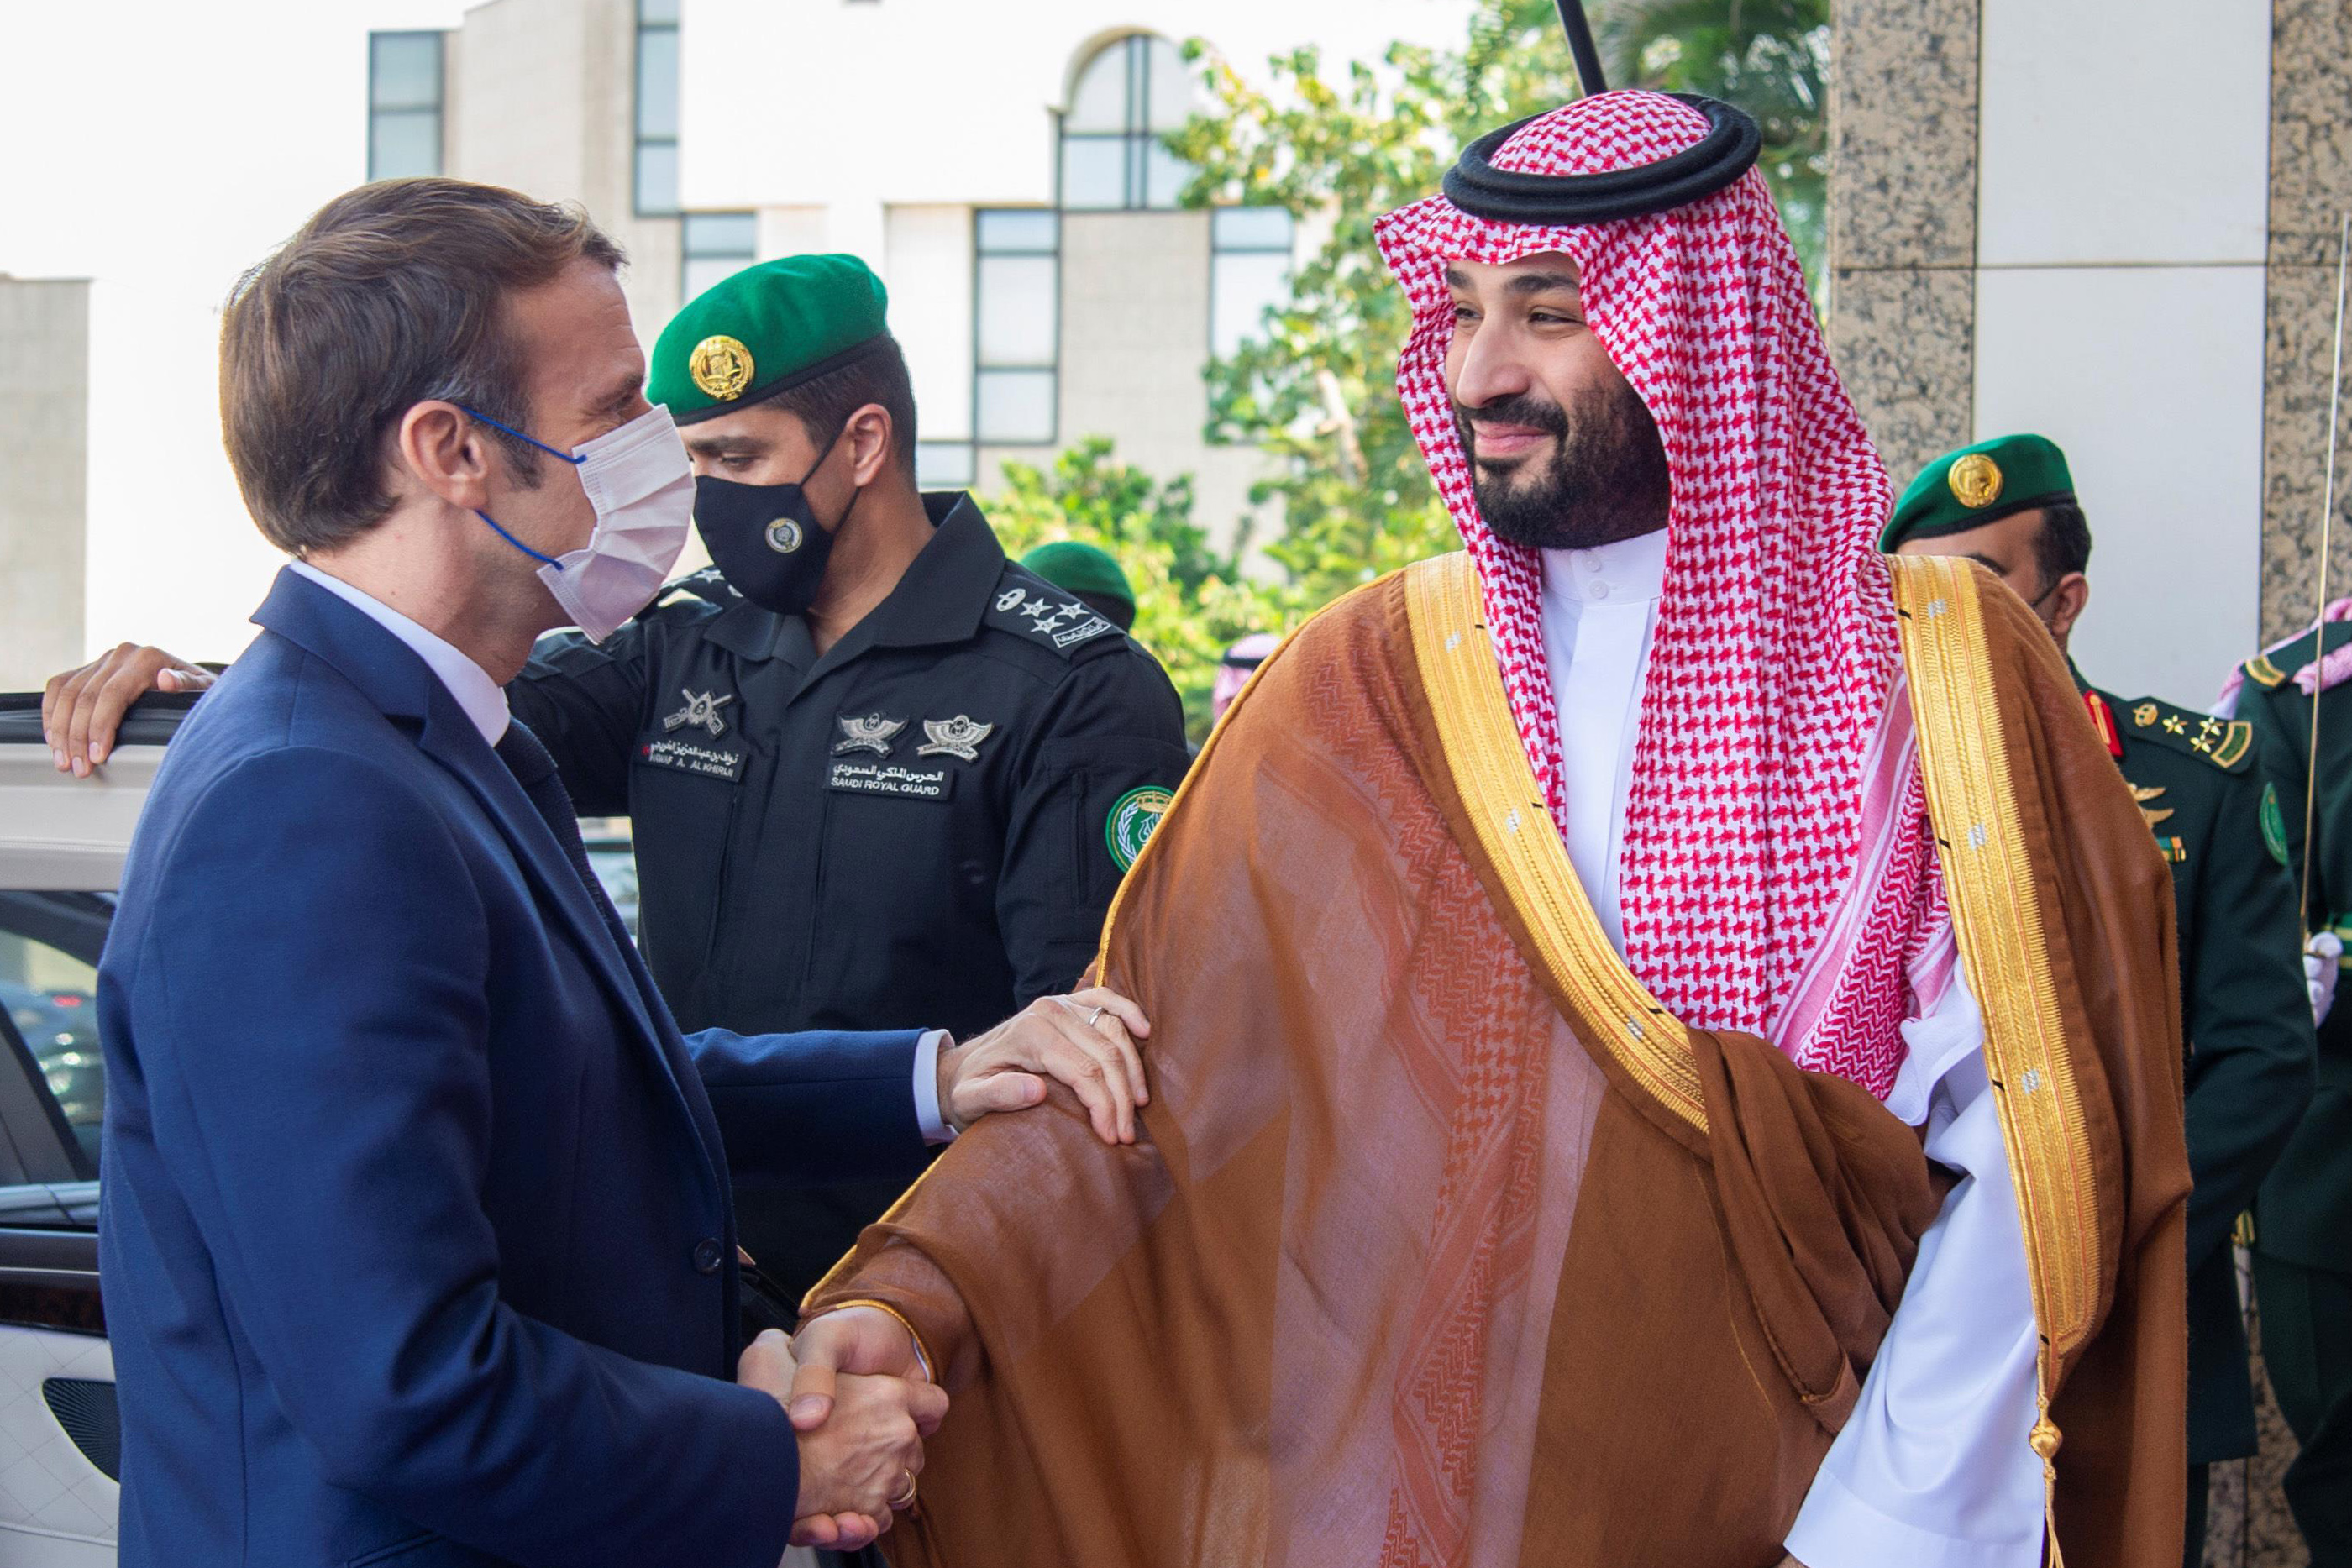  ولي العهد السعودي محمد بن سلمان، والرئيس الفرنسي إيمانويل ماكرون (د ب أ)